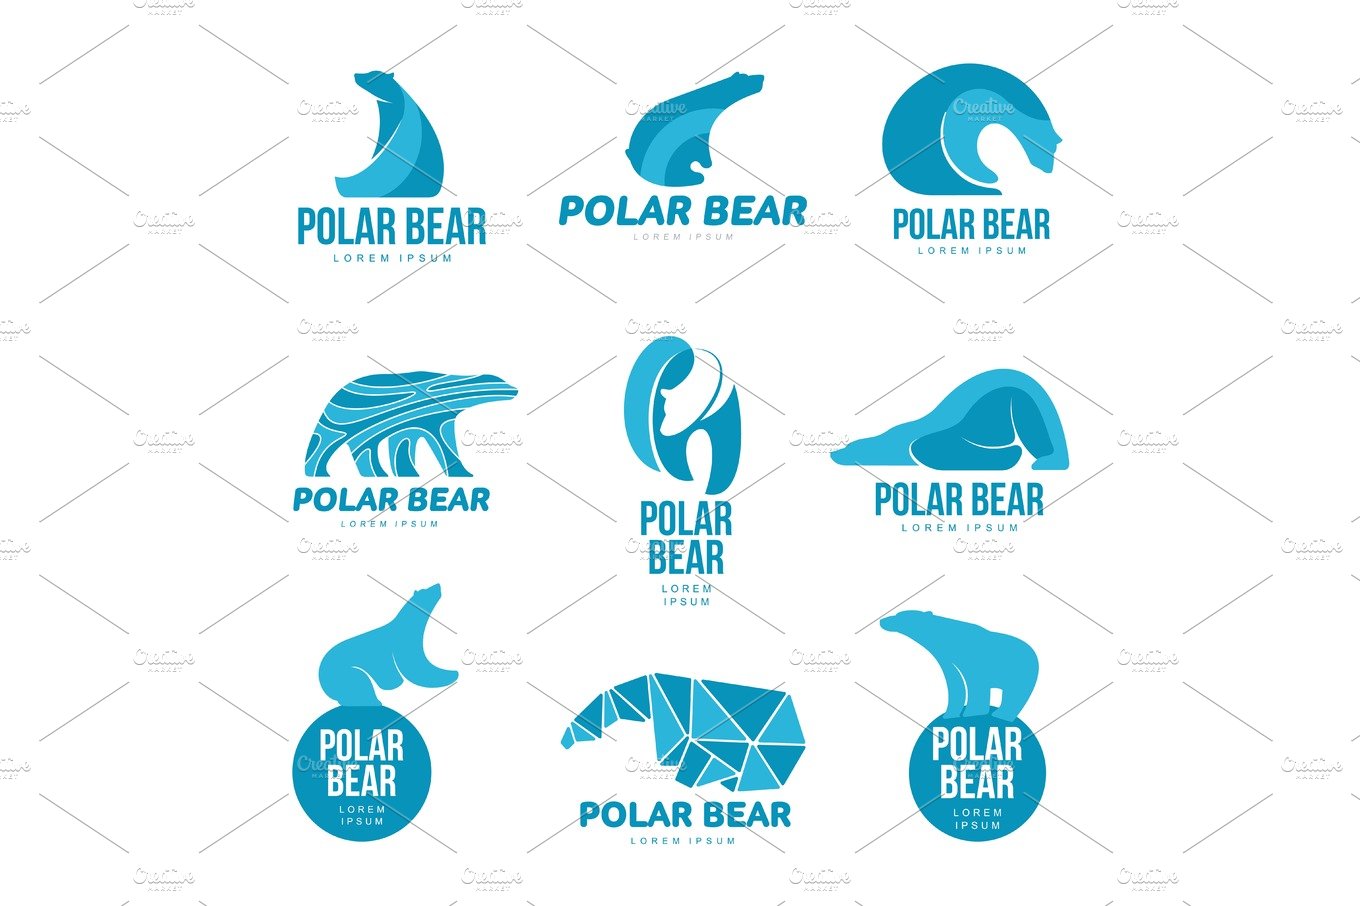 Polar bear logo cover image.